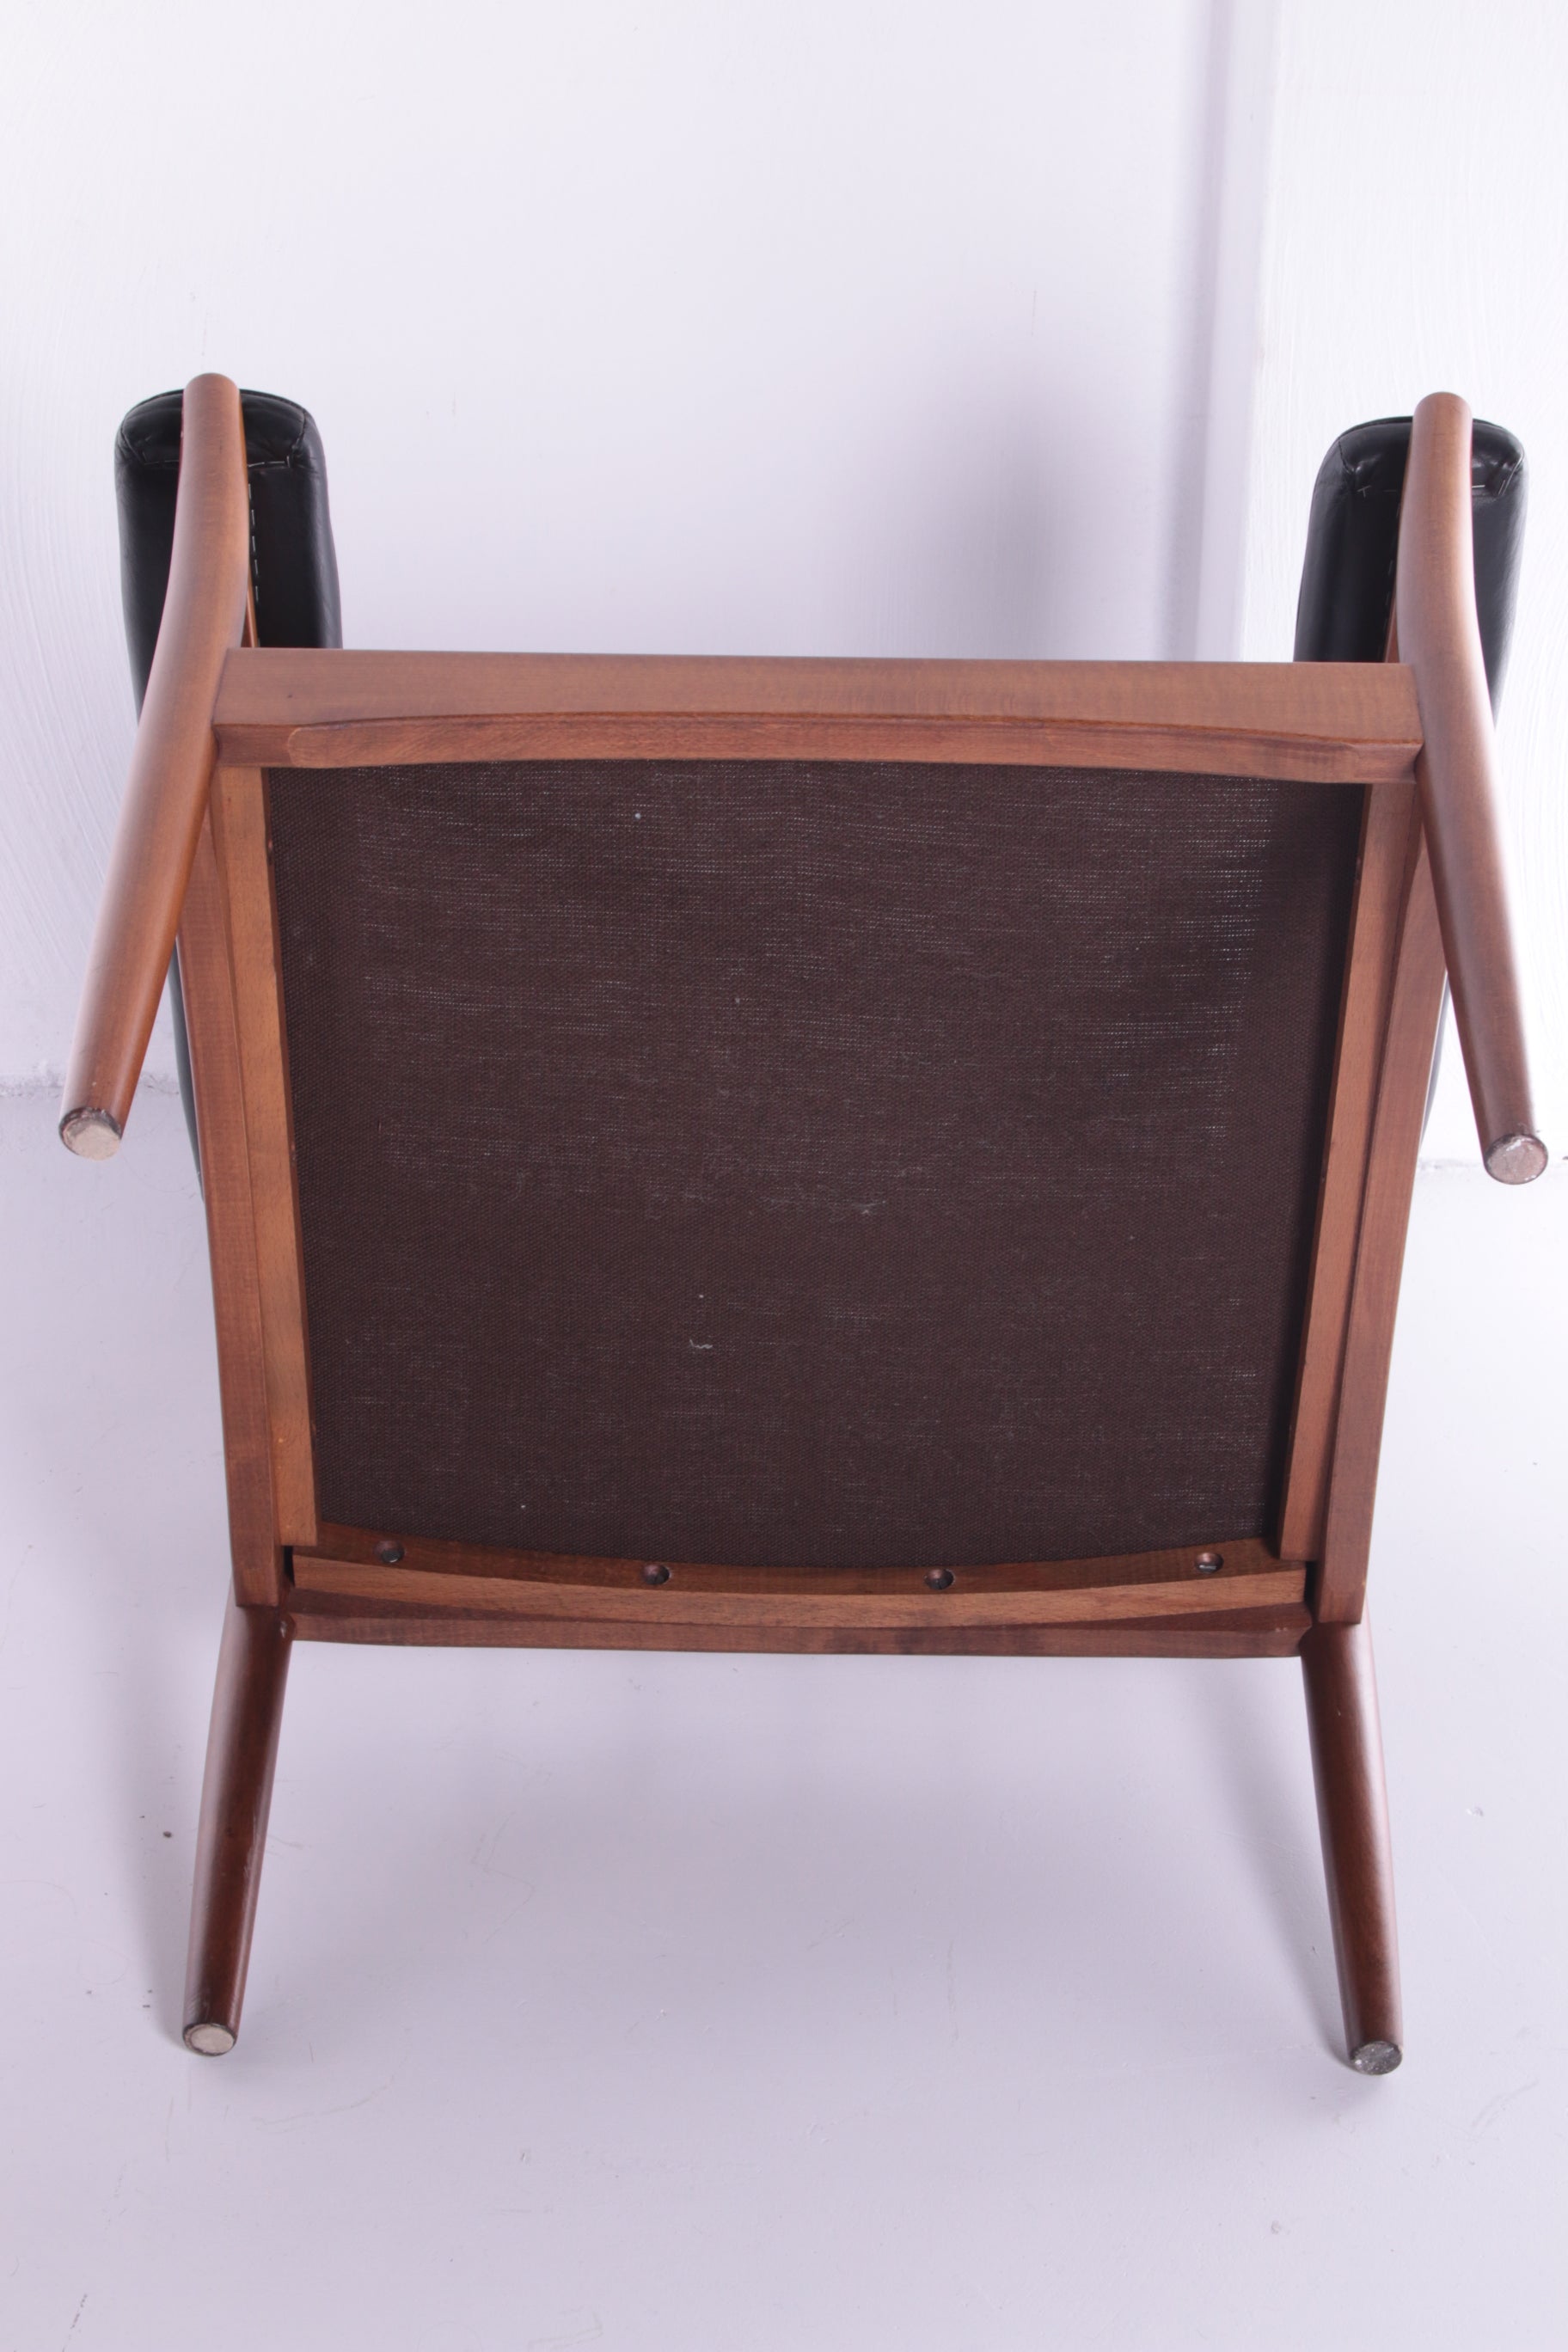  Set van 2 Lounge chairs van Gote Mobler sweden jaren70